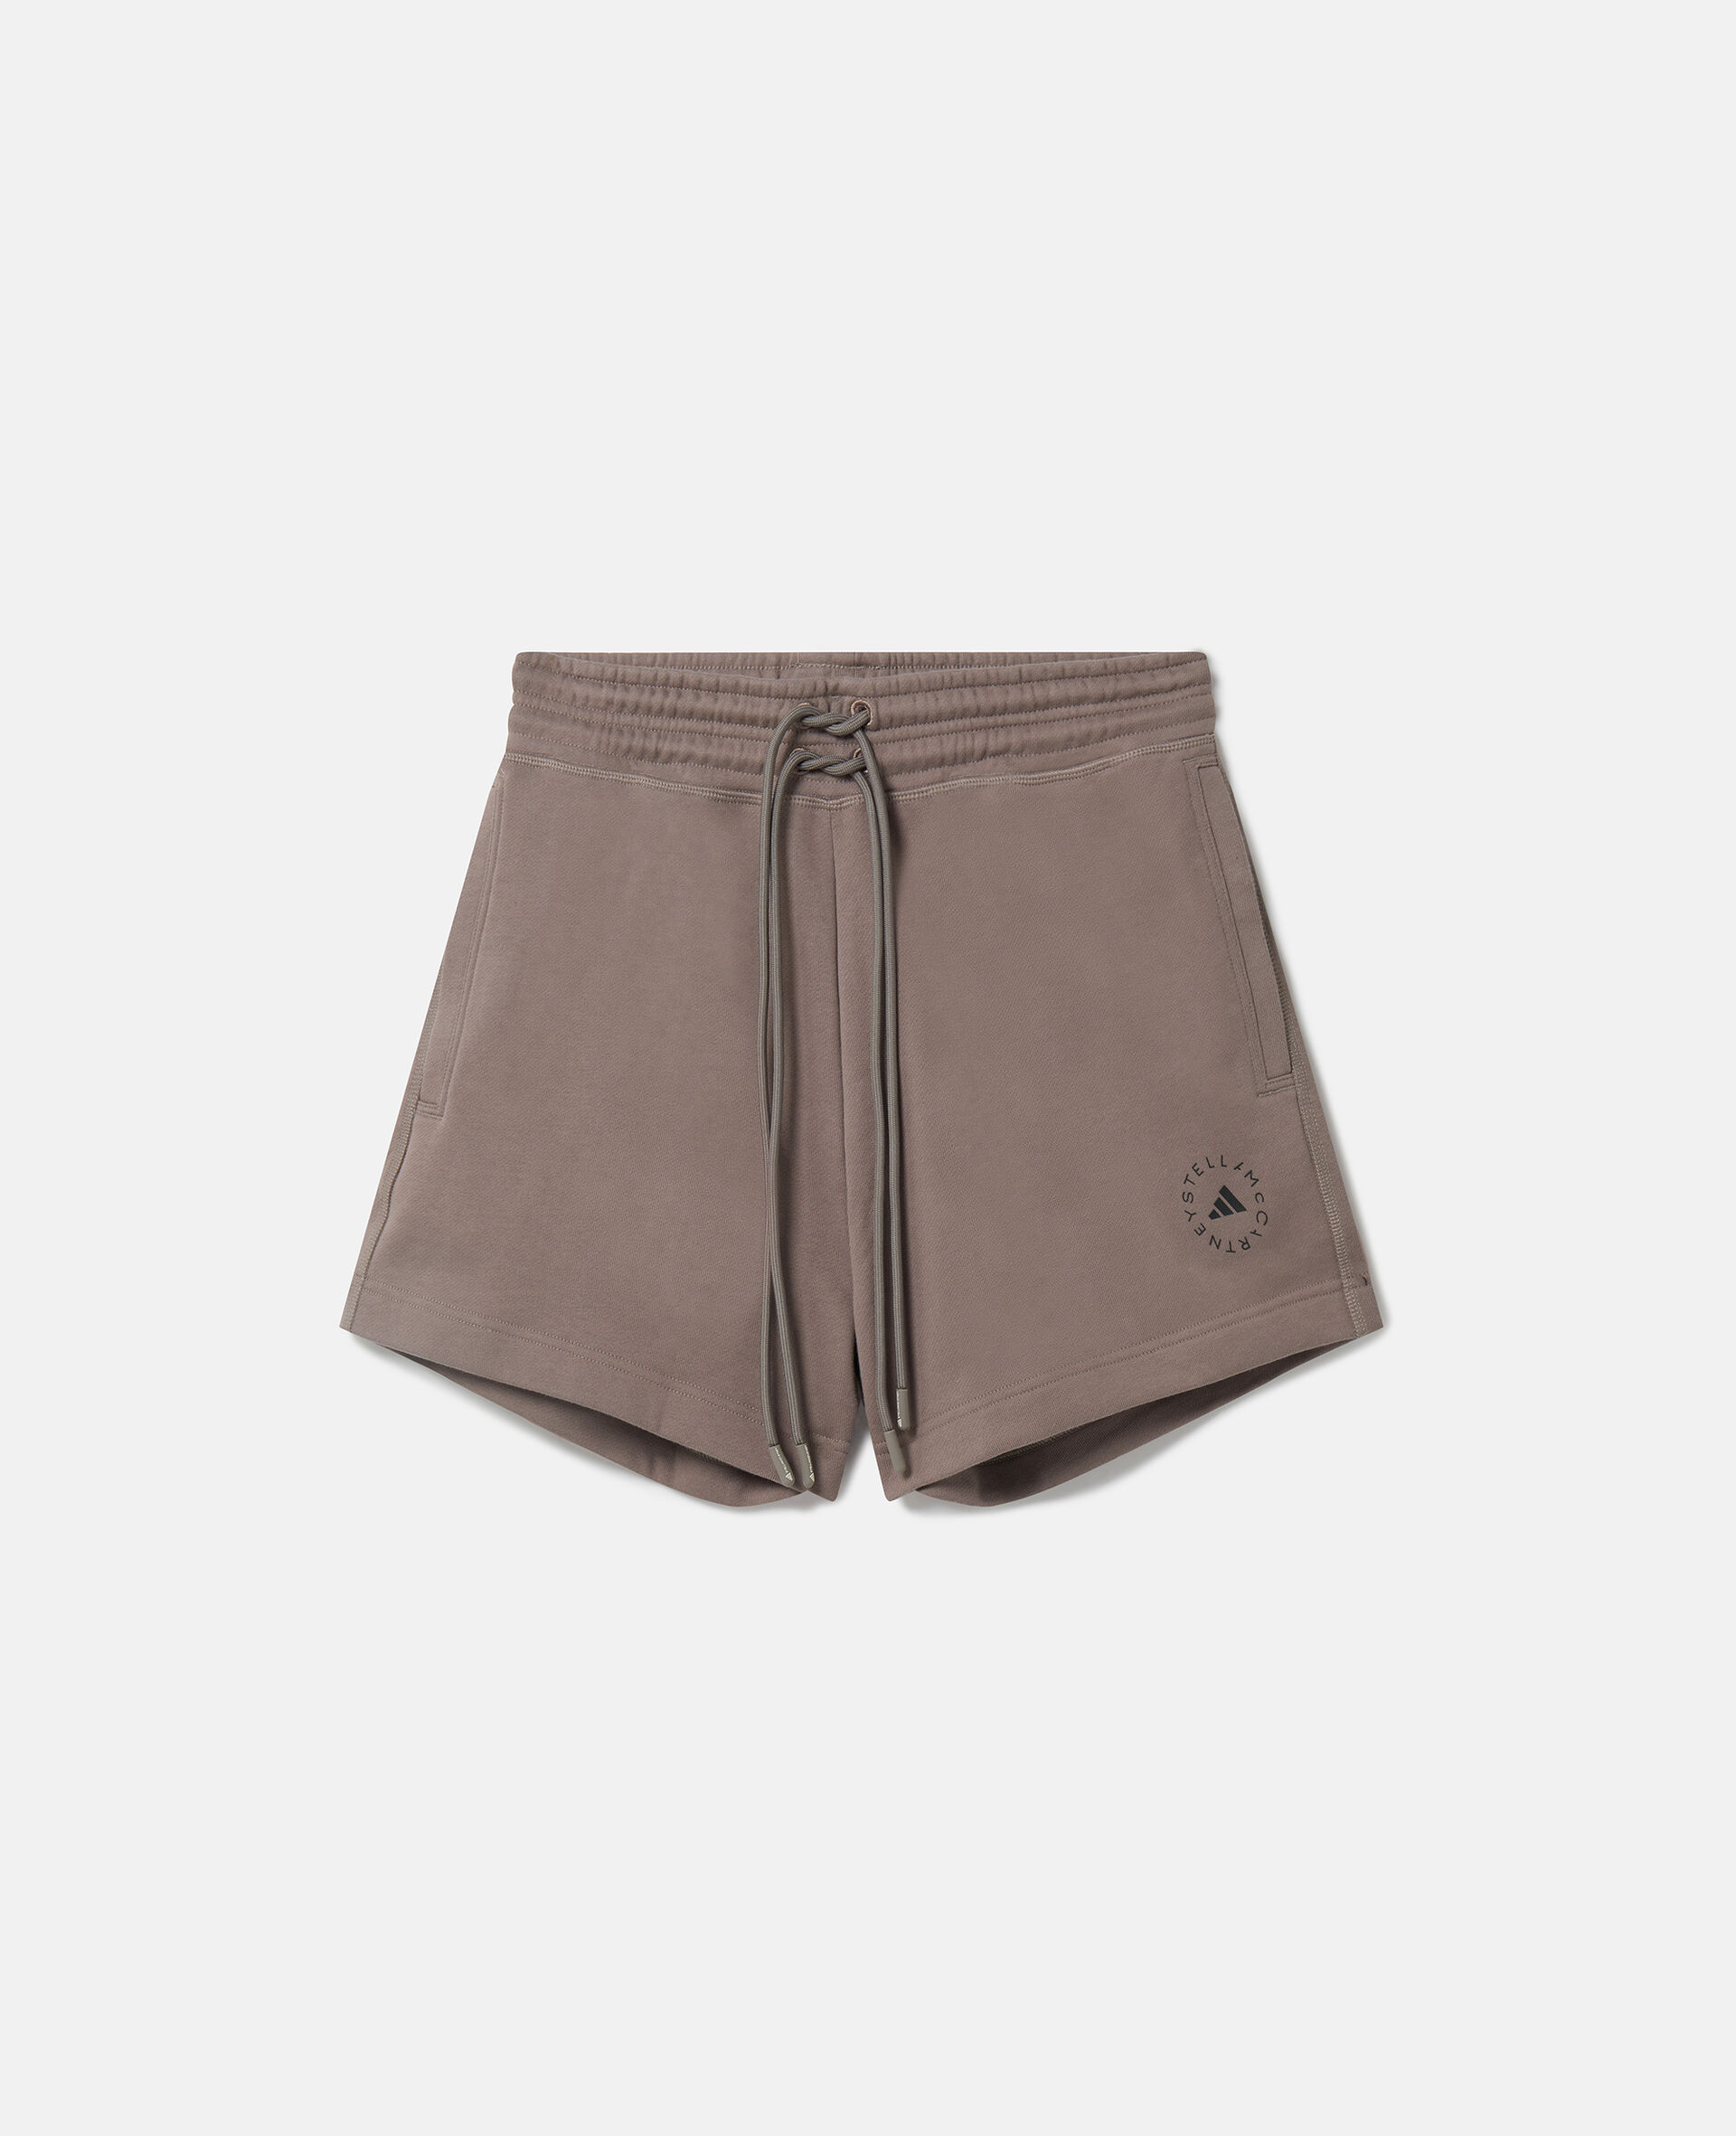 Shorts in spugna di cotone con logo TrueCasuals-Marrone-large image number 0